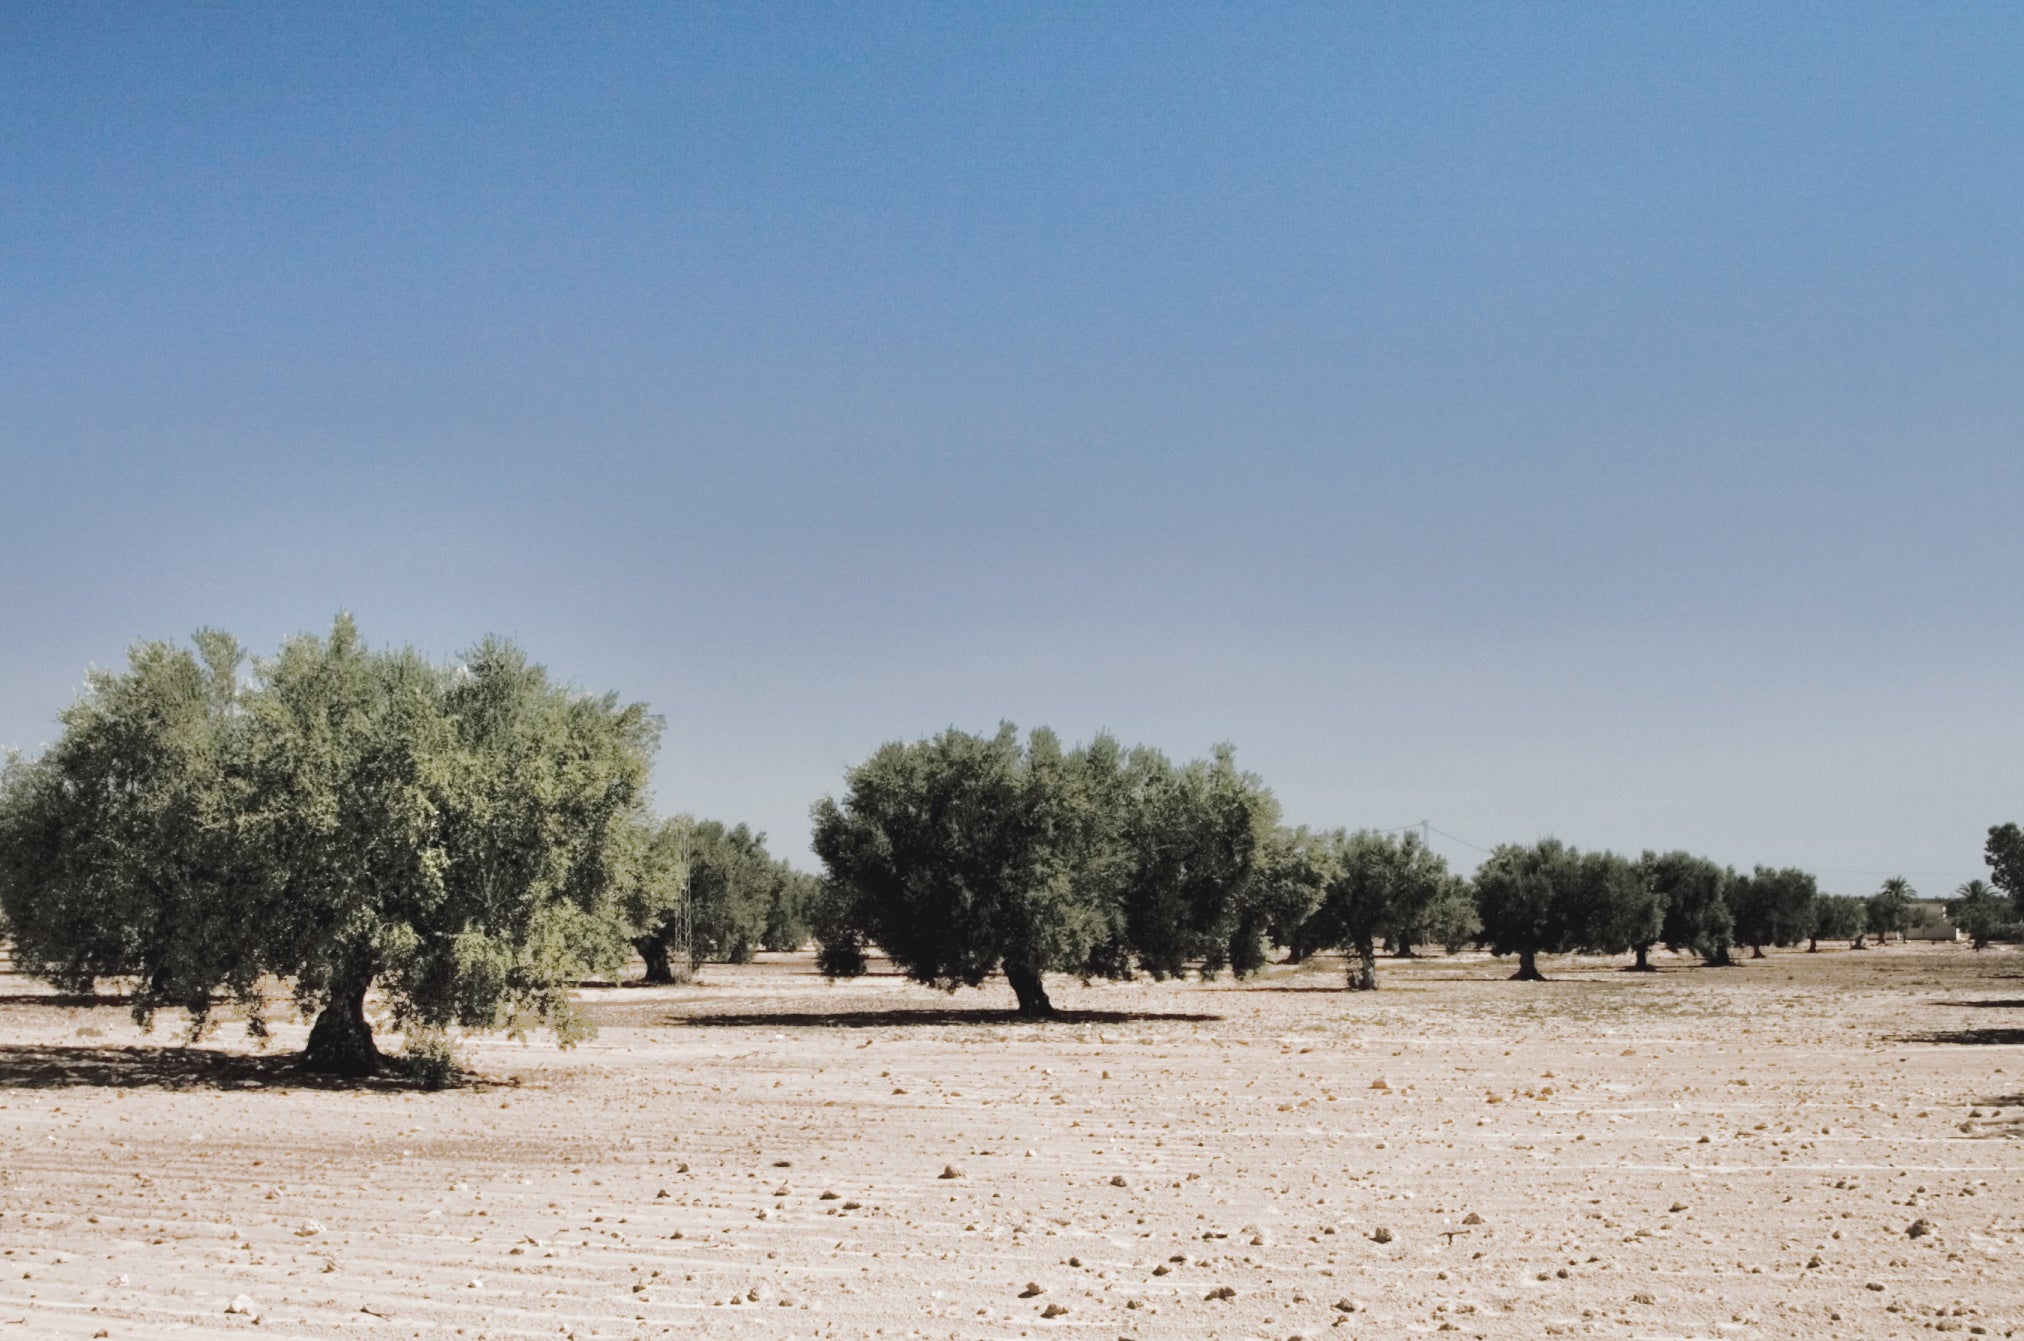 Landscape of olive tree grove in Tunisia